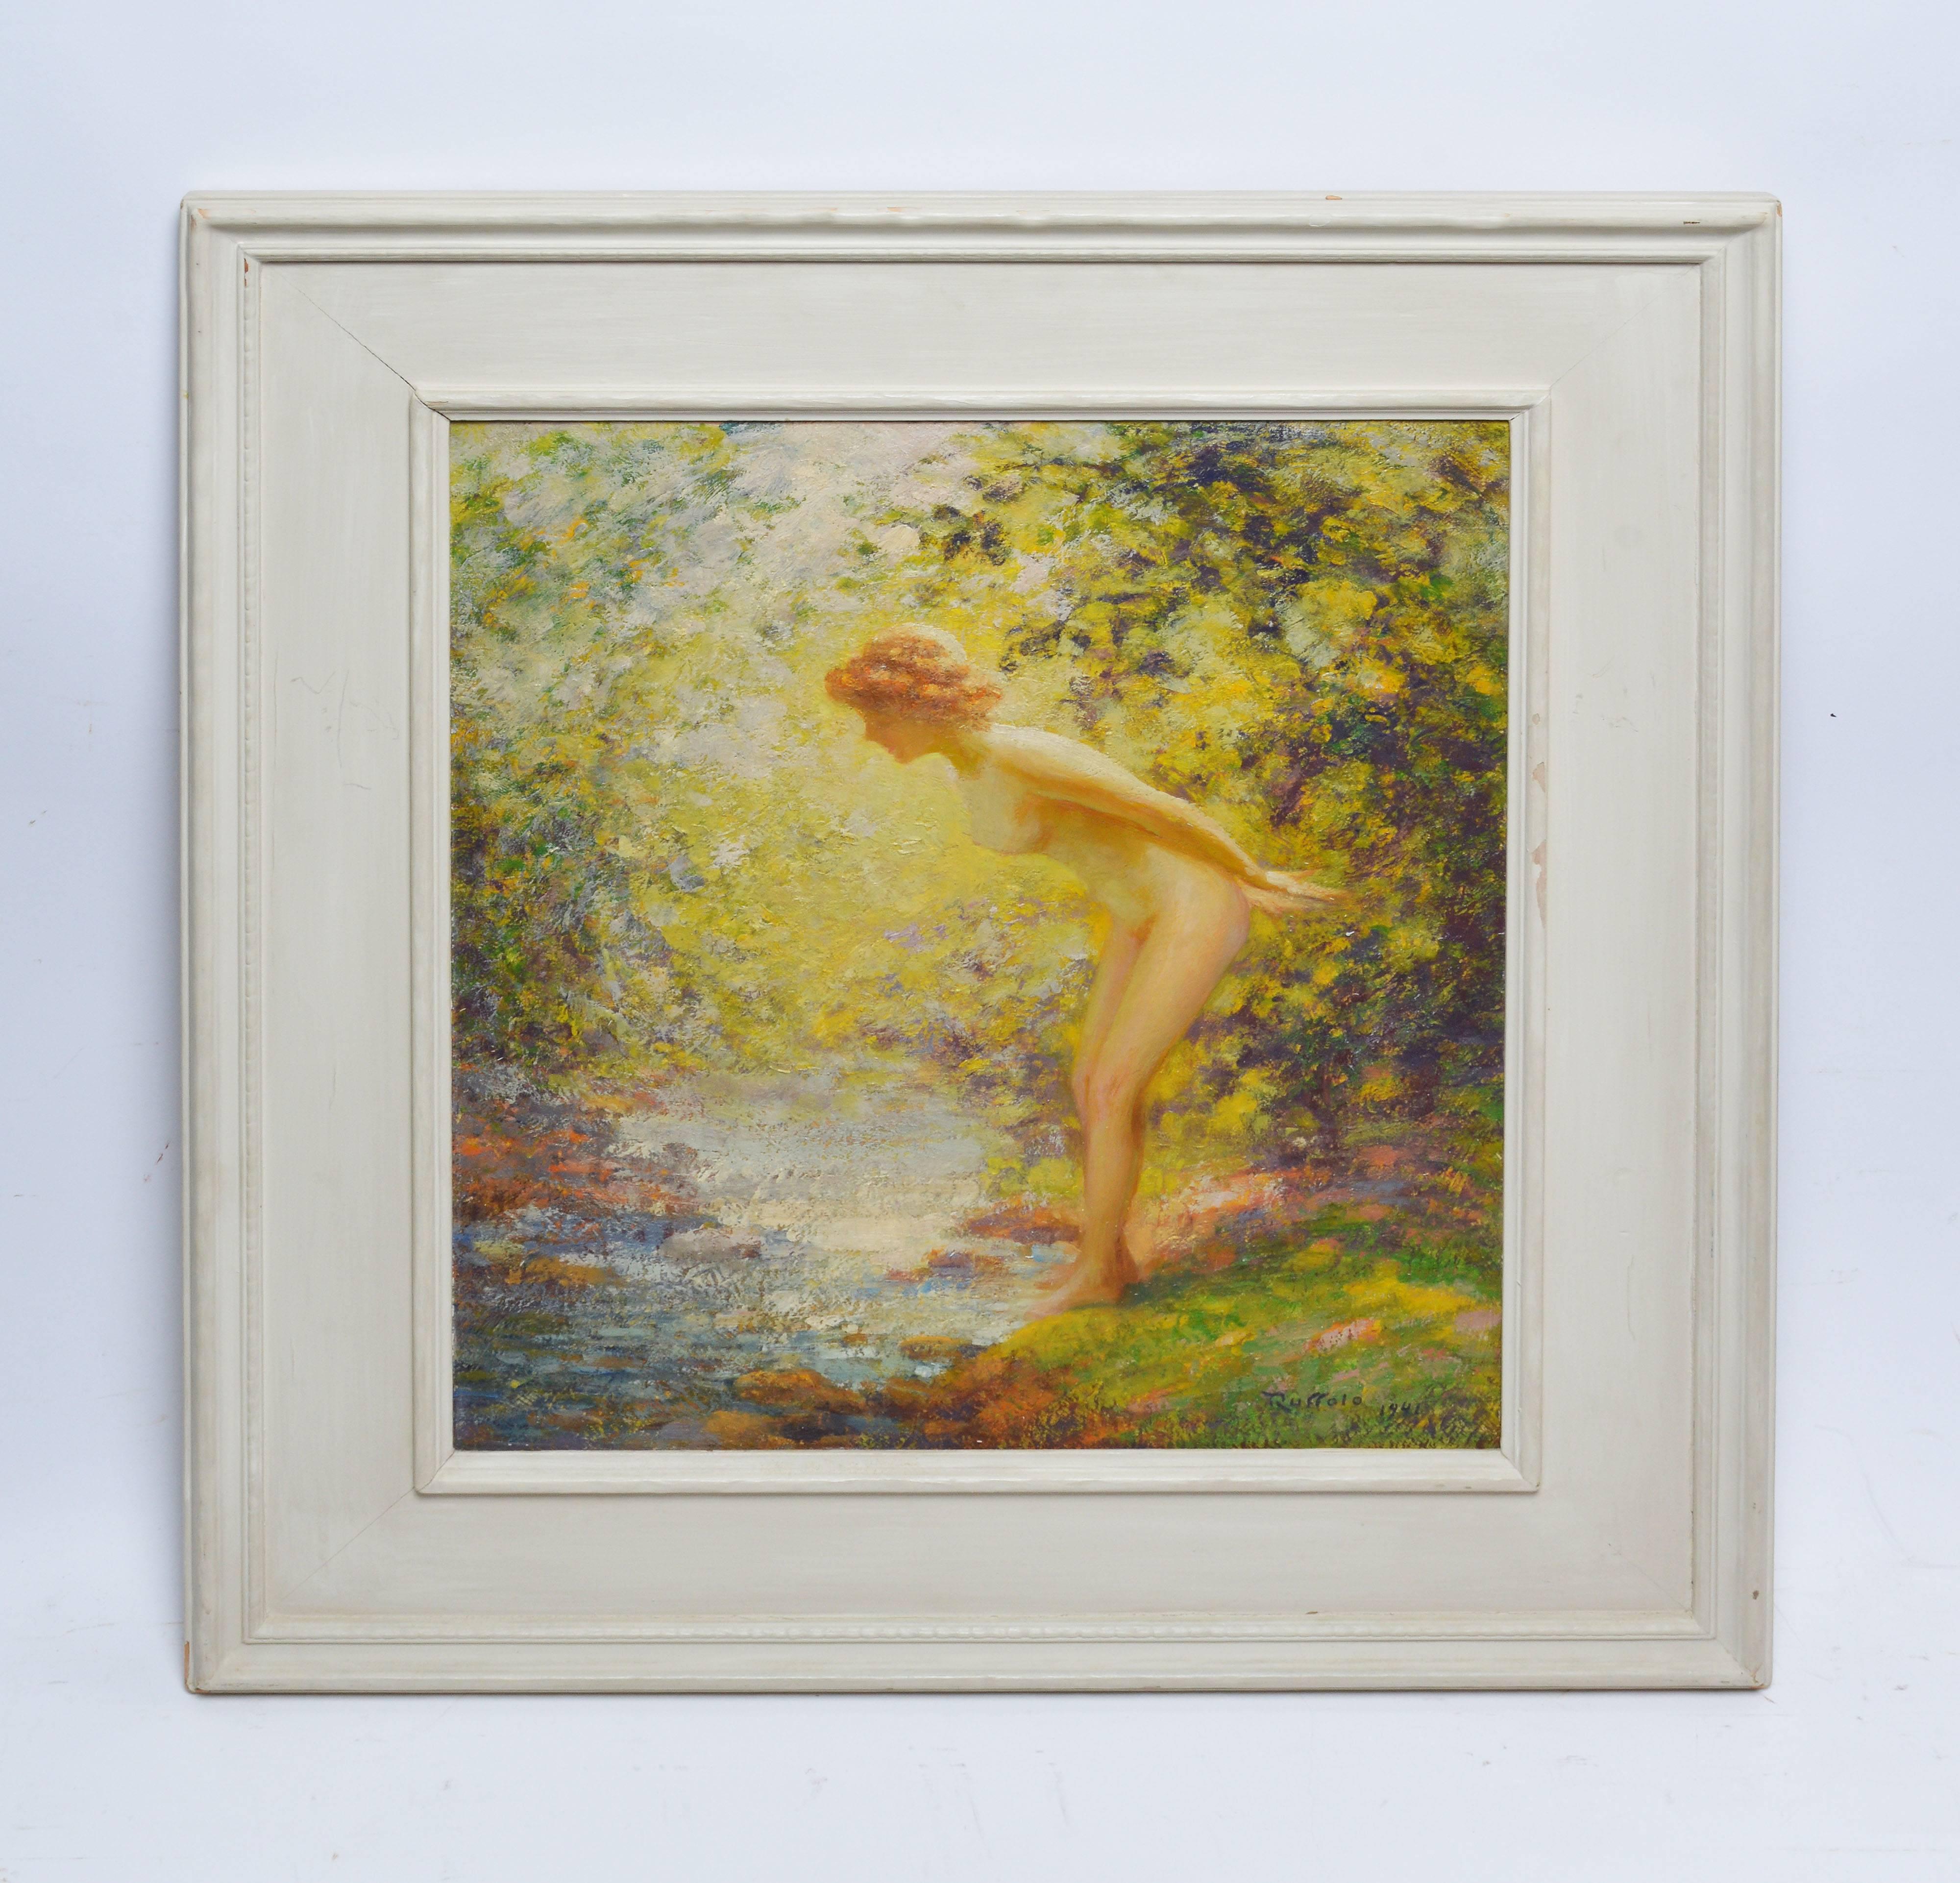 „“Faszination“, Nackte Frau im Wald von Gaspare J Ruffolo – Painting von Gaspare J. Ruffolo